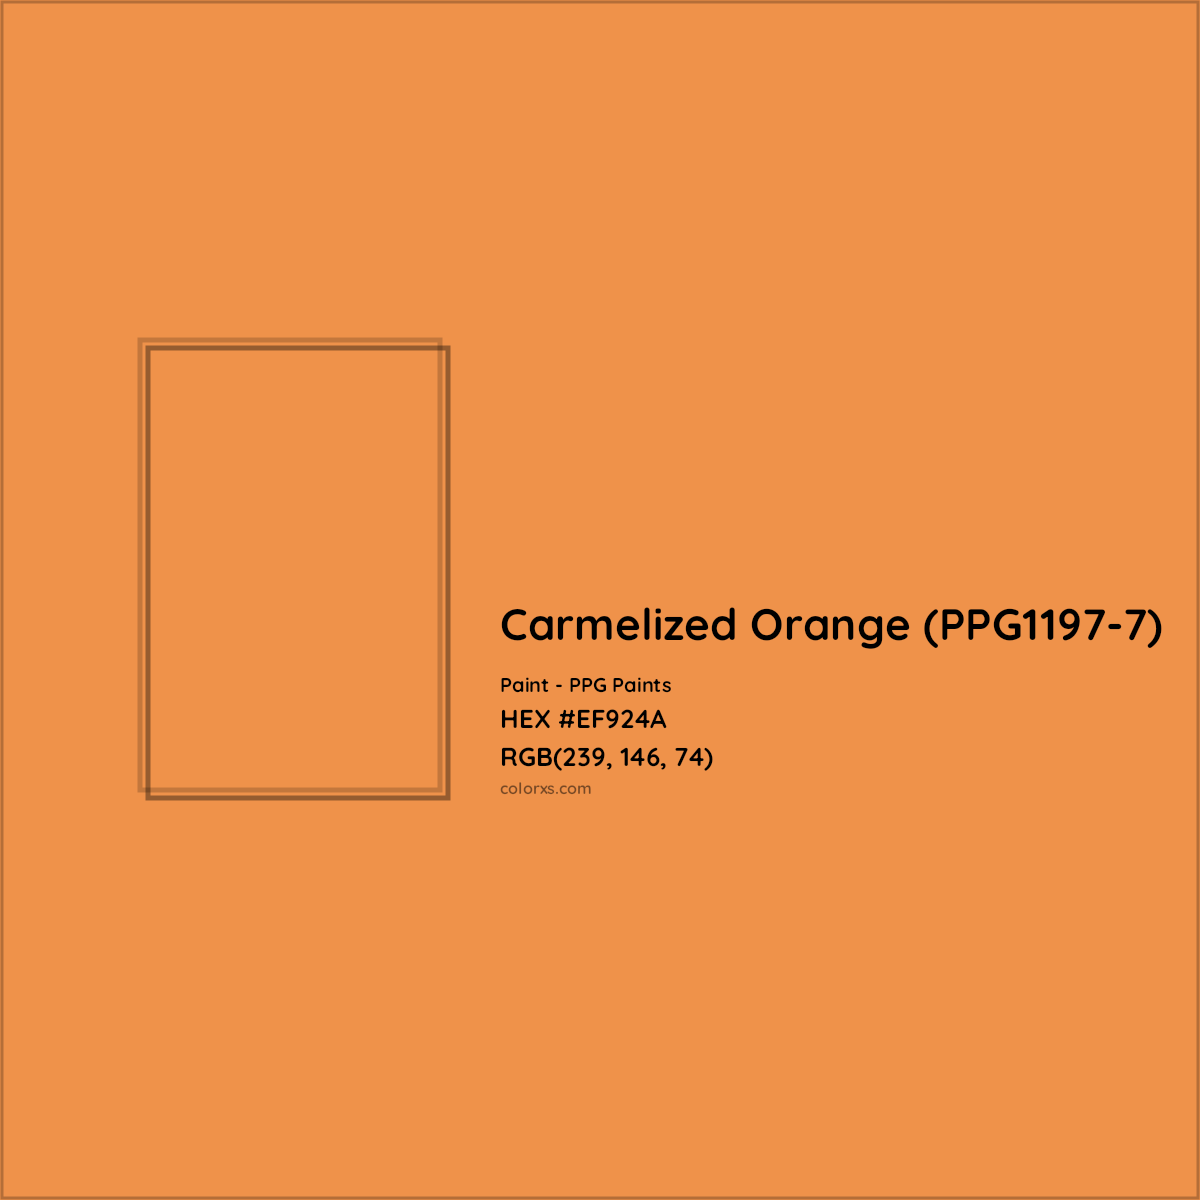 HEX #EF924A Carmelized Orange (PPG1197-7) Paint PPG Paints - Color Code